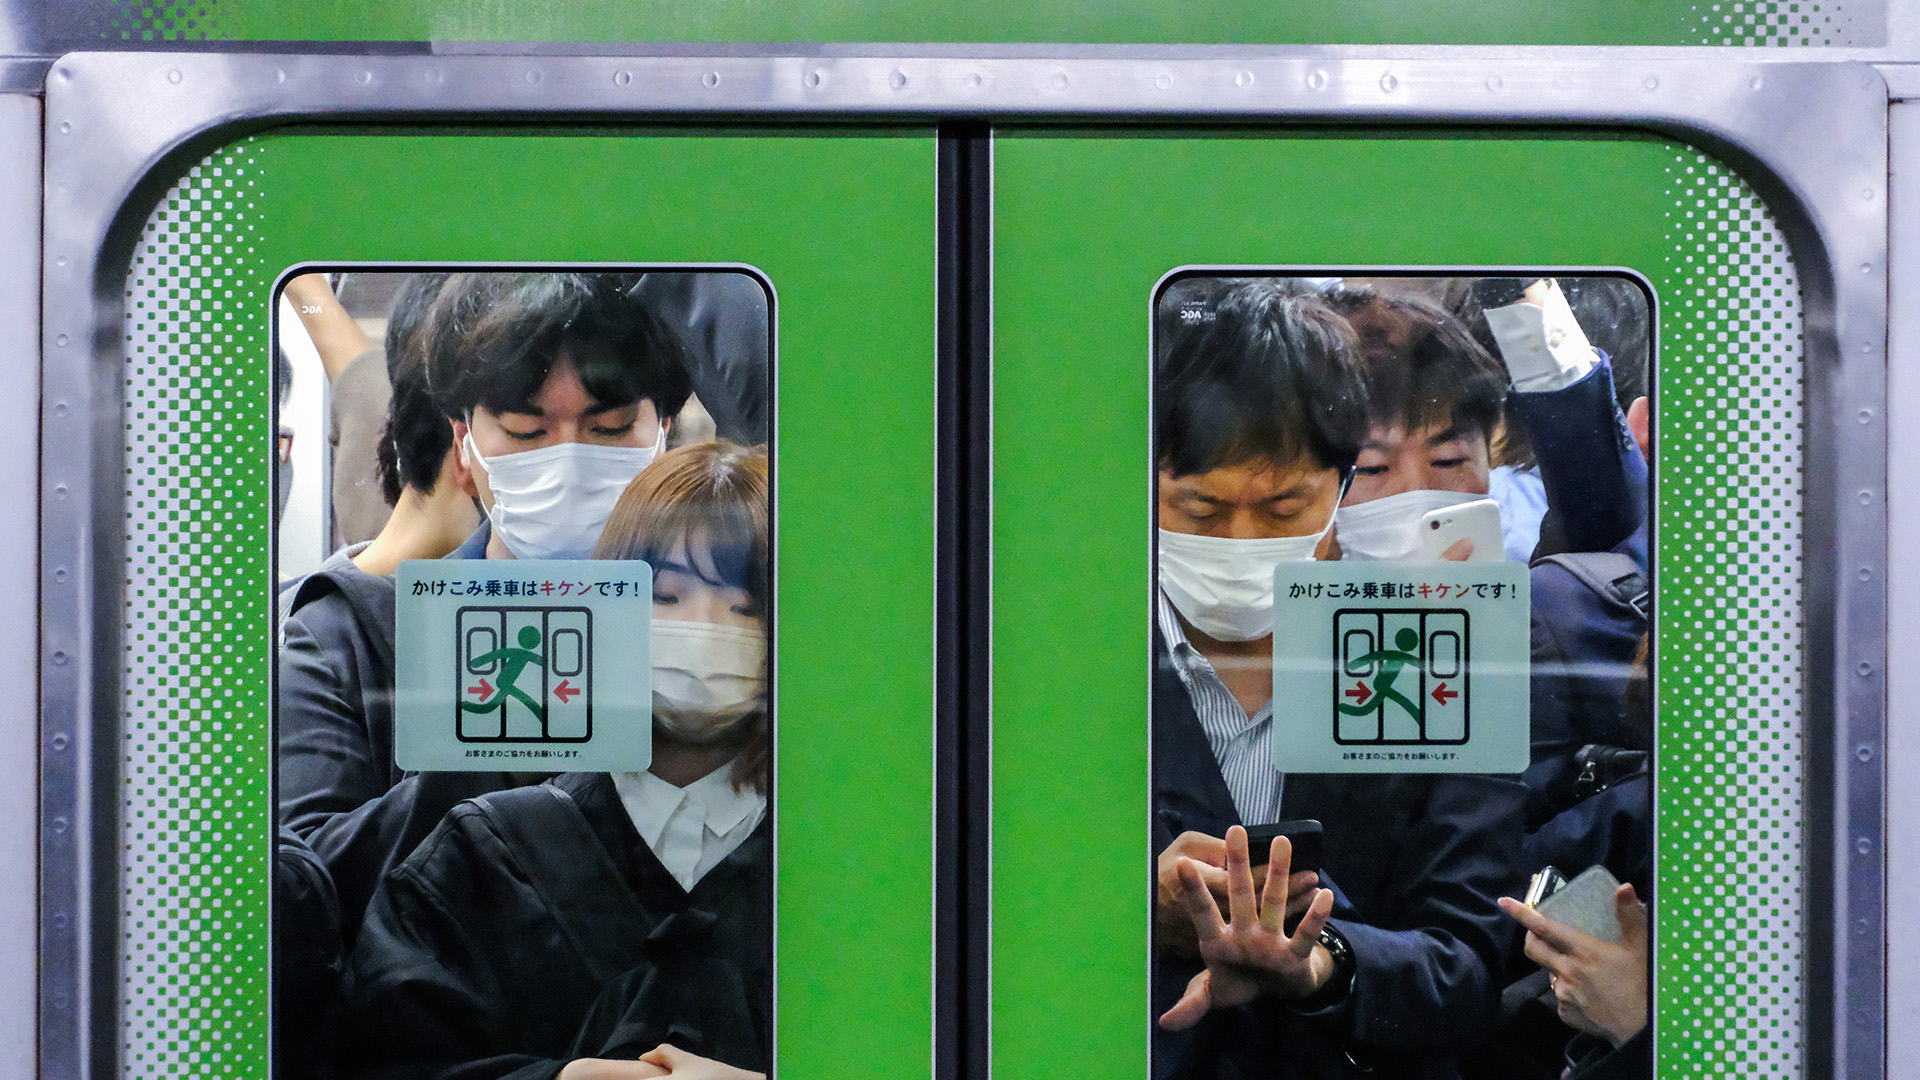 قطار طوكيو المزدحم